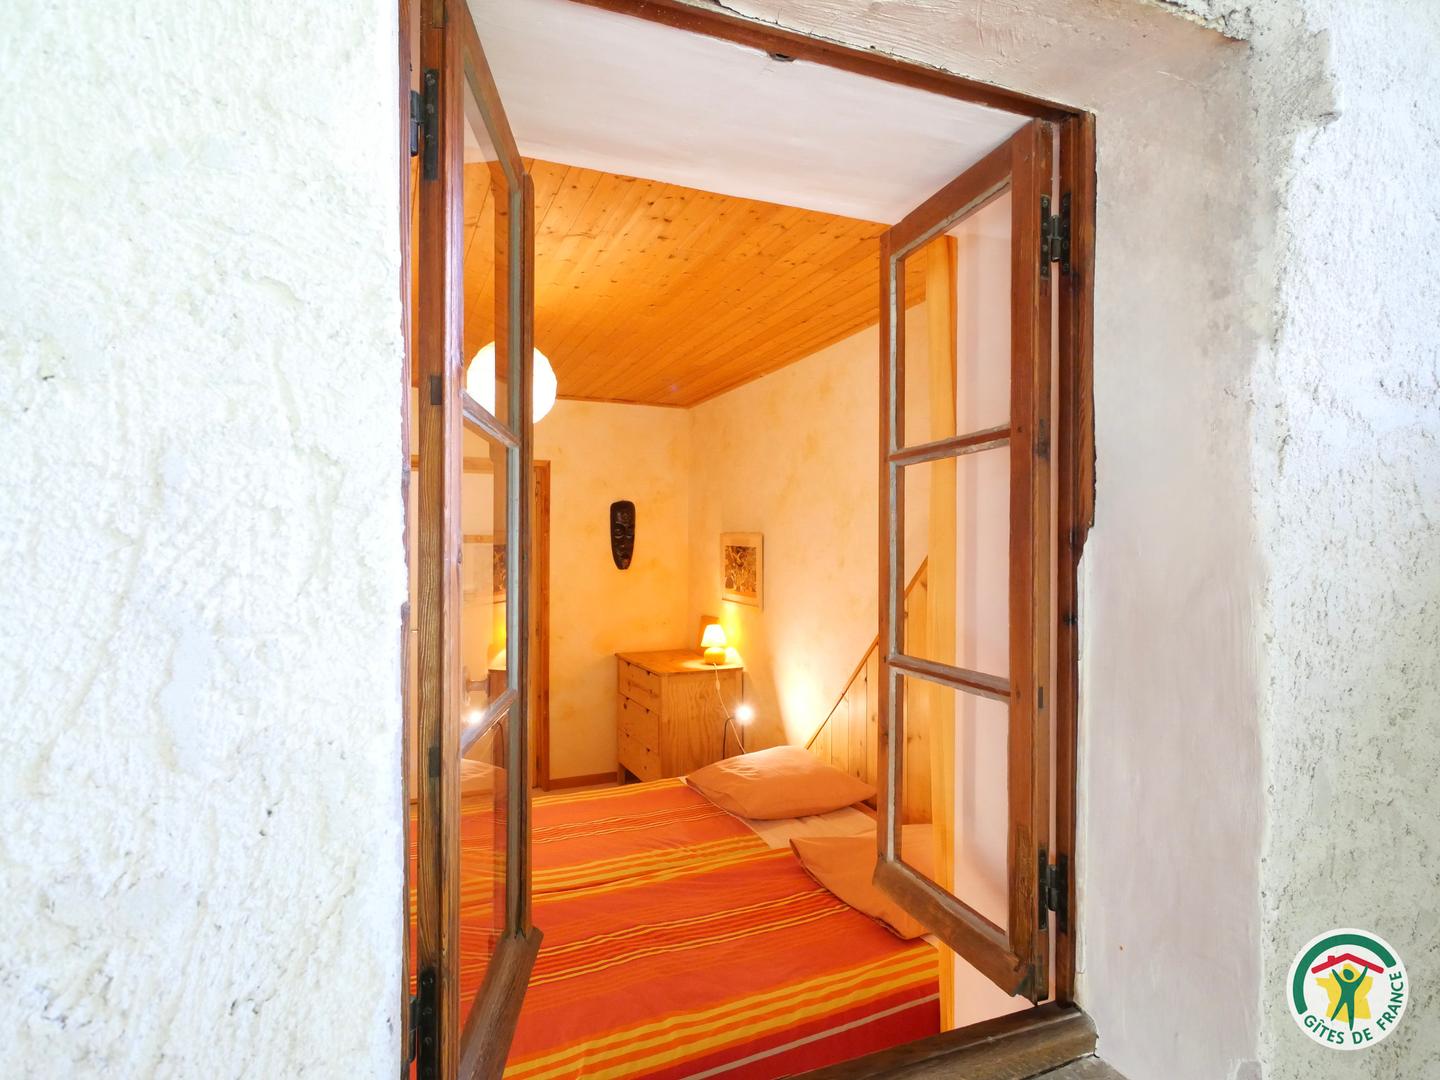 Logement GreenGo: Grand Gîte montagnard 9-11 pl., avec grand sauna tonneau chauffé au feu de bois, Gap, Hautes-Alpes - Image 22